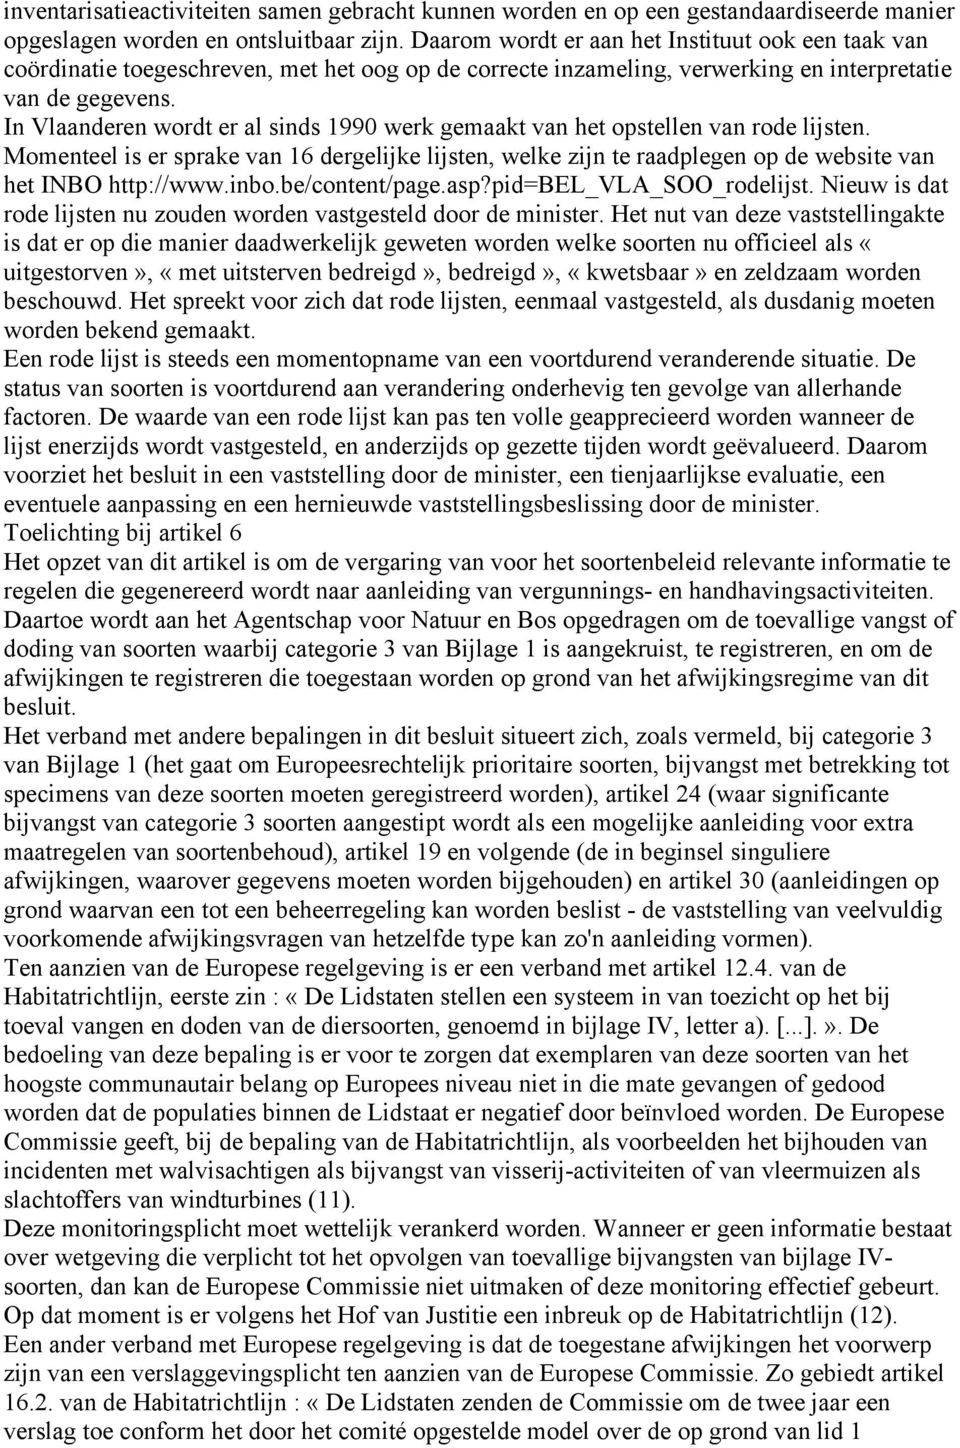 In Vlaanderen wordt er al sinds 1990 werk gemaakt van het opstellen van rode lijsten. Momenteel is er sprake van 16 dergelijke lijsten, welke zijn te raadplegen op de website van het INBO http://www.